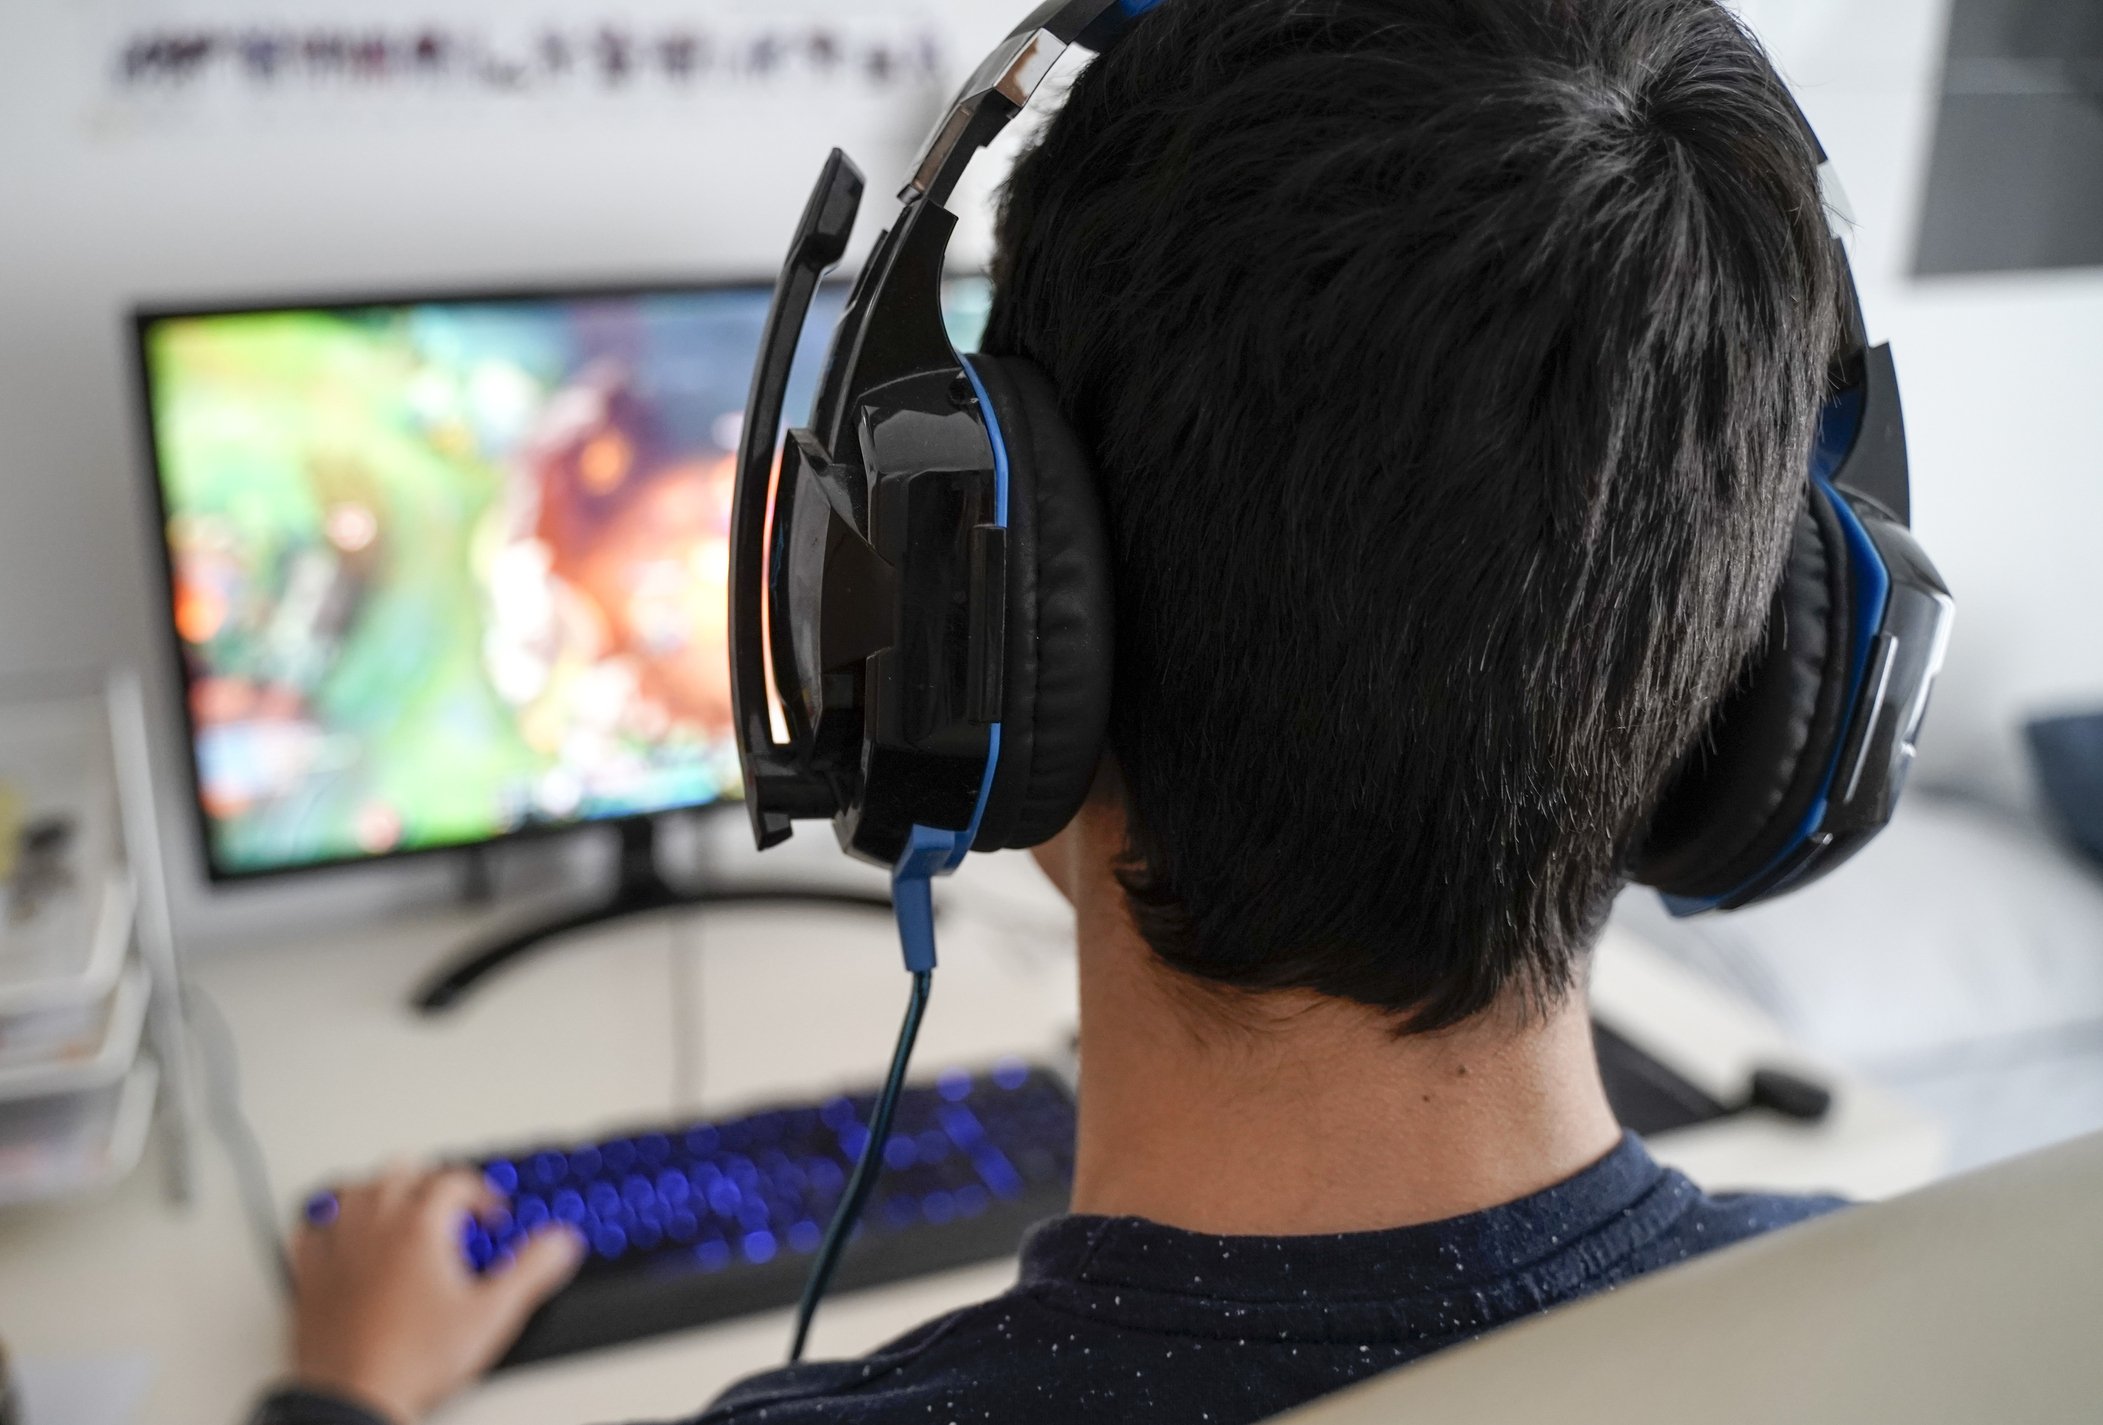 Mann mit Kopfhörern, die auf seinem Computer spielen | Quelle: Getty Images